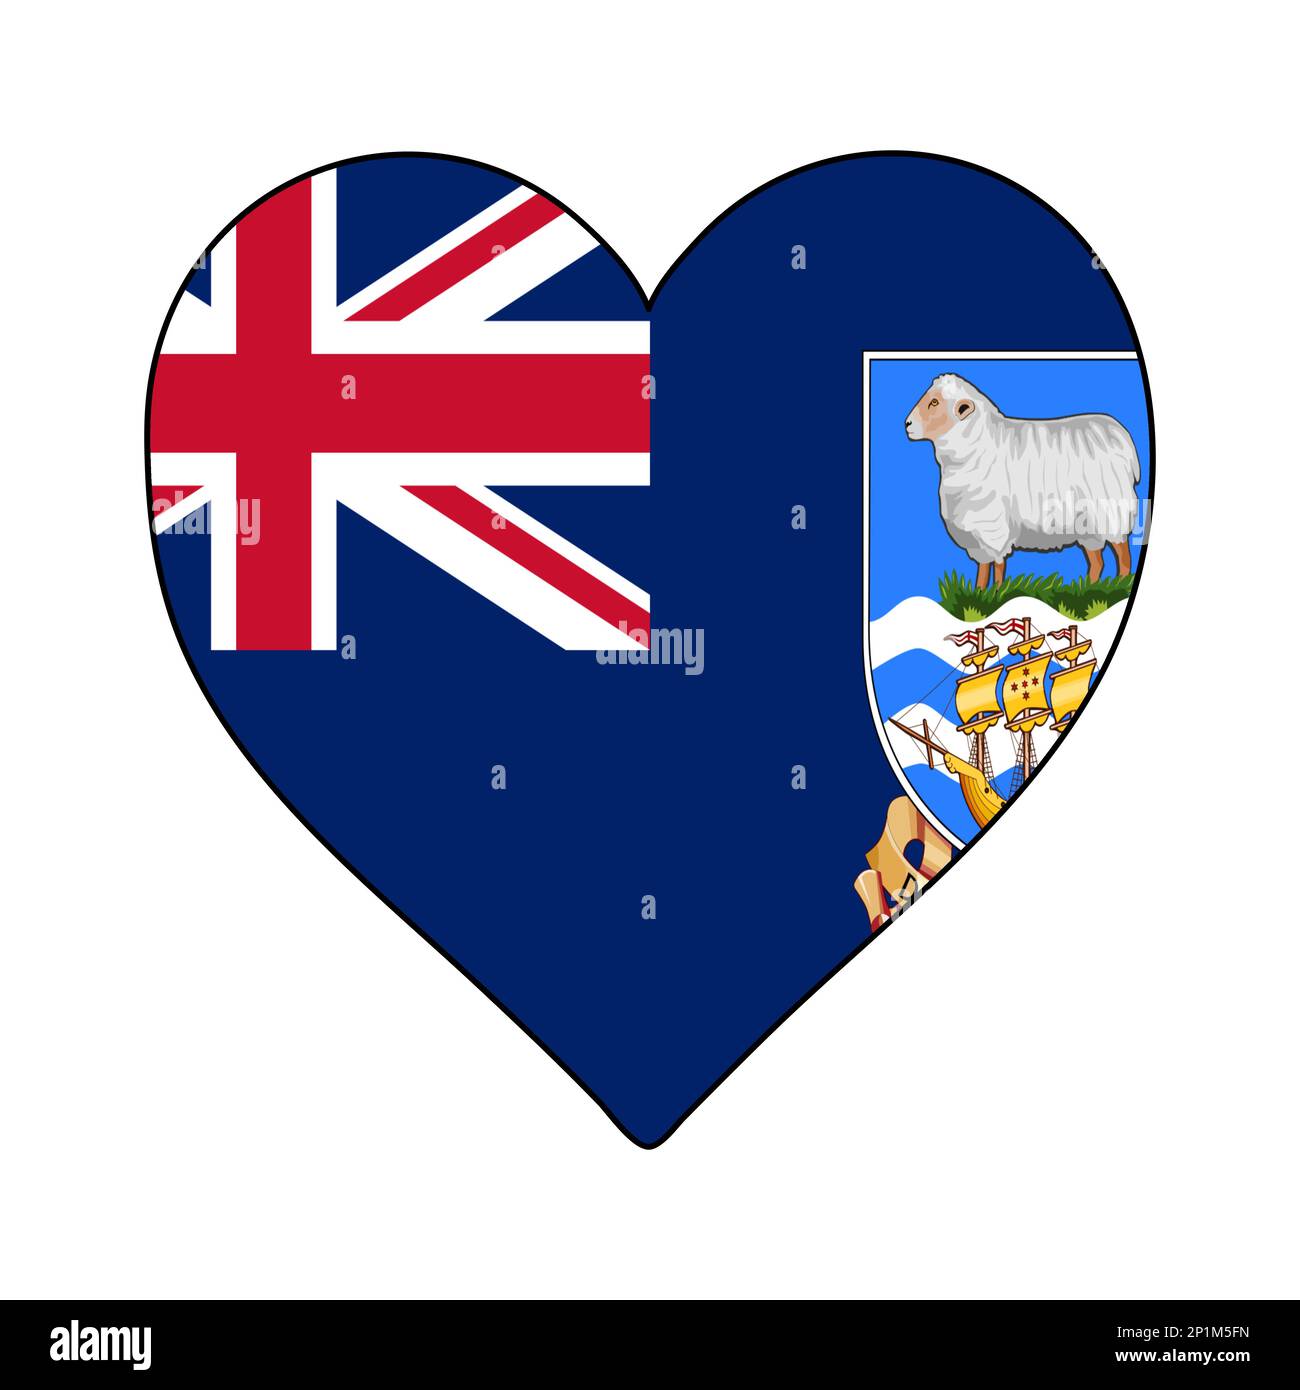 Falklandinseln Herzform Flagge. Ich Liebe Die Falklandinseln. Besuchen Sie Die Falklandinseln. Südamerika. Lateinamerika. Grafische Konstruktion Von Vektordarstellungen. Stock Vektor